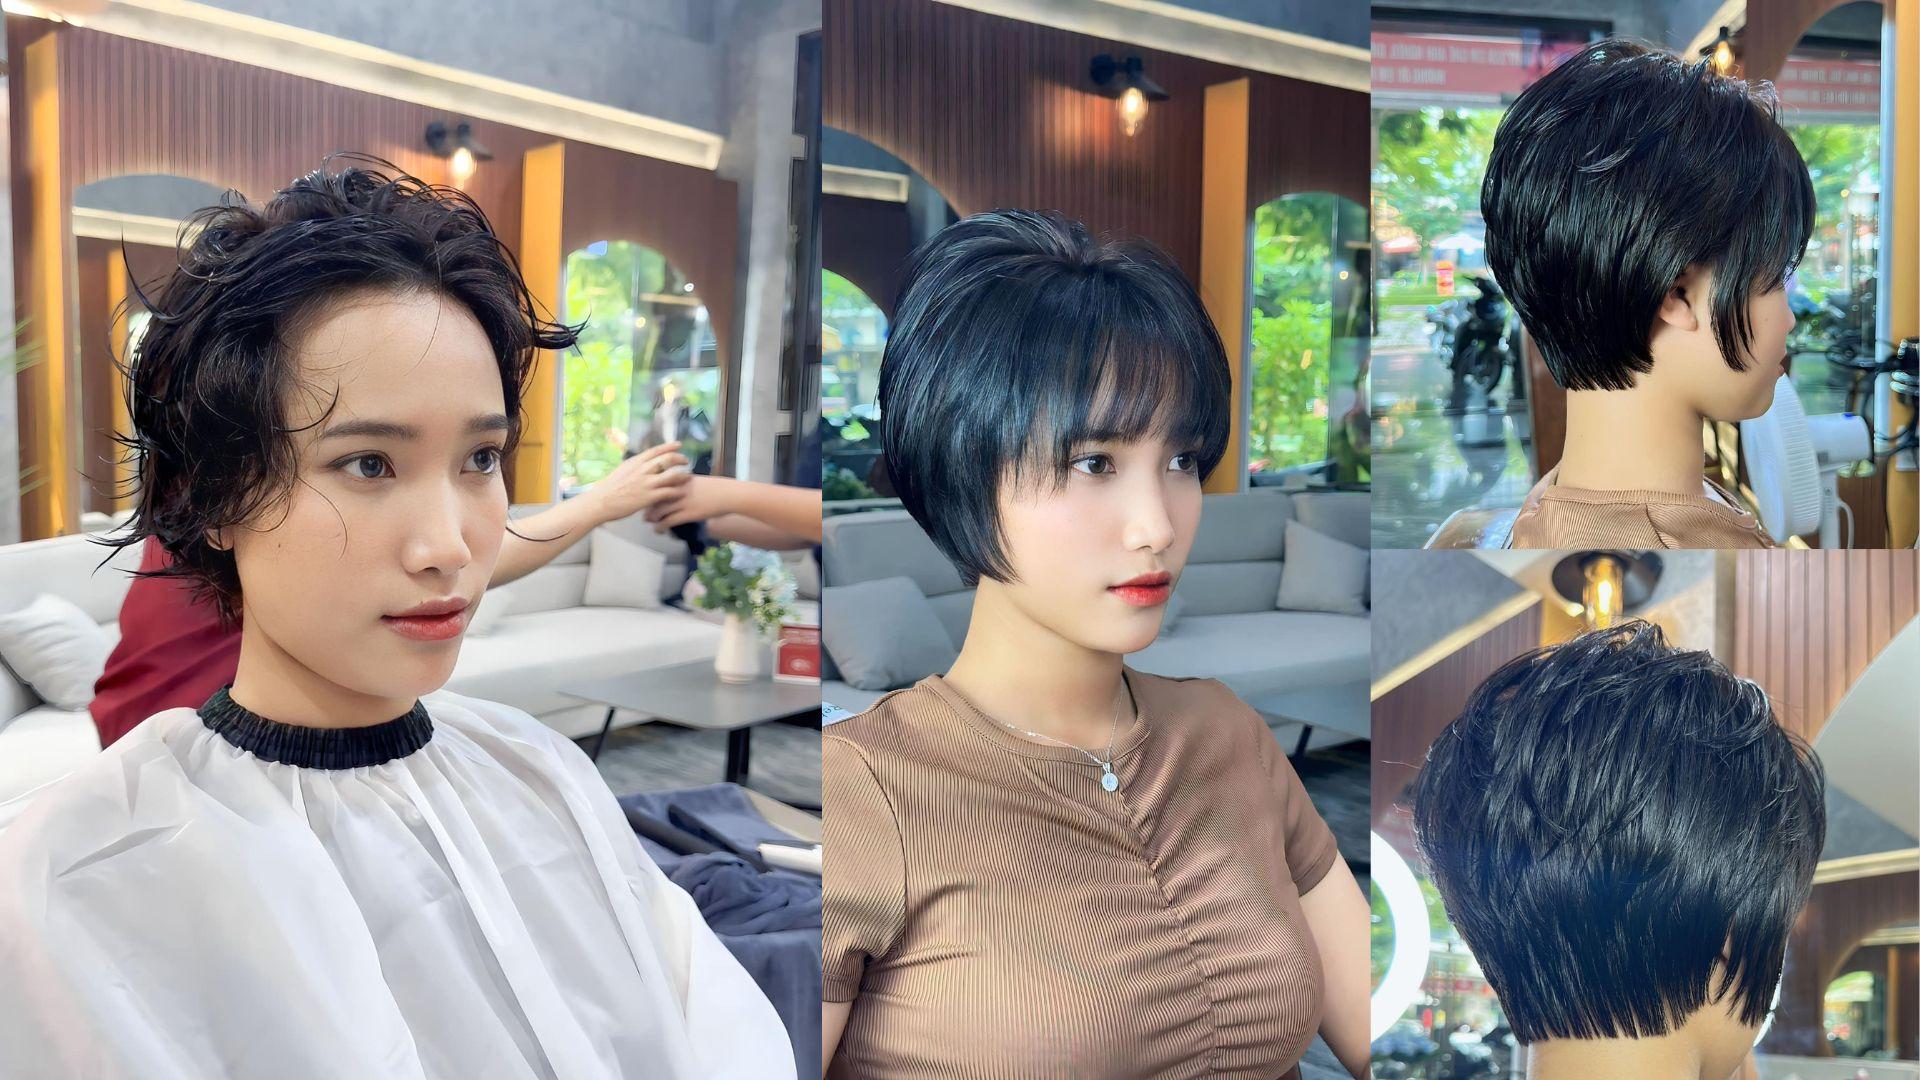 Hình ảnh khách hàng trước và sau làm tóc